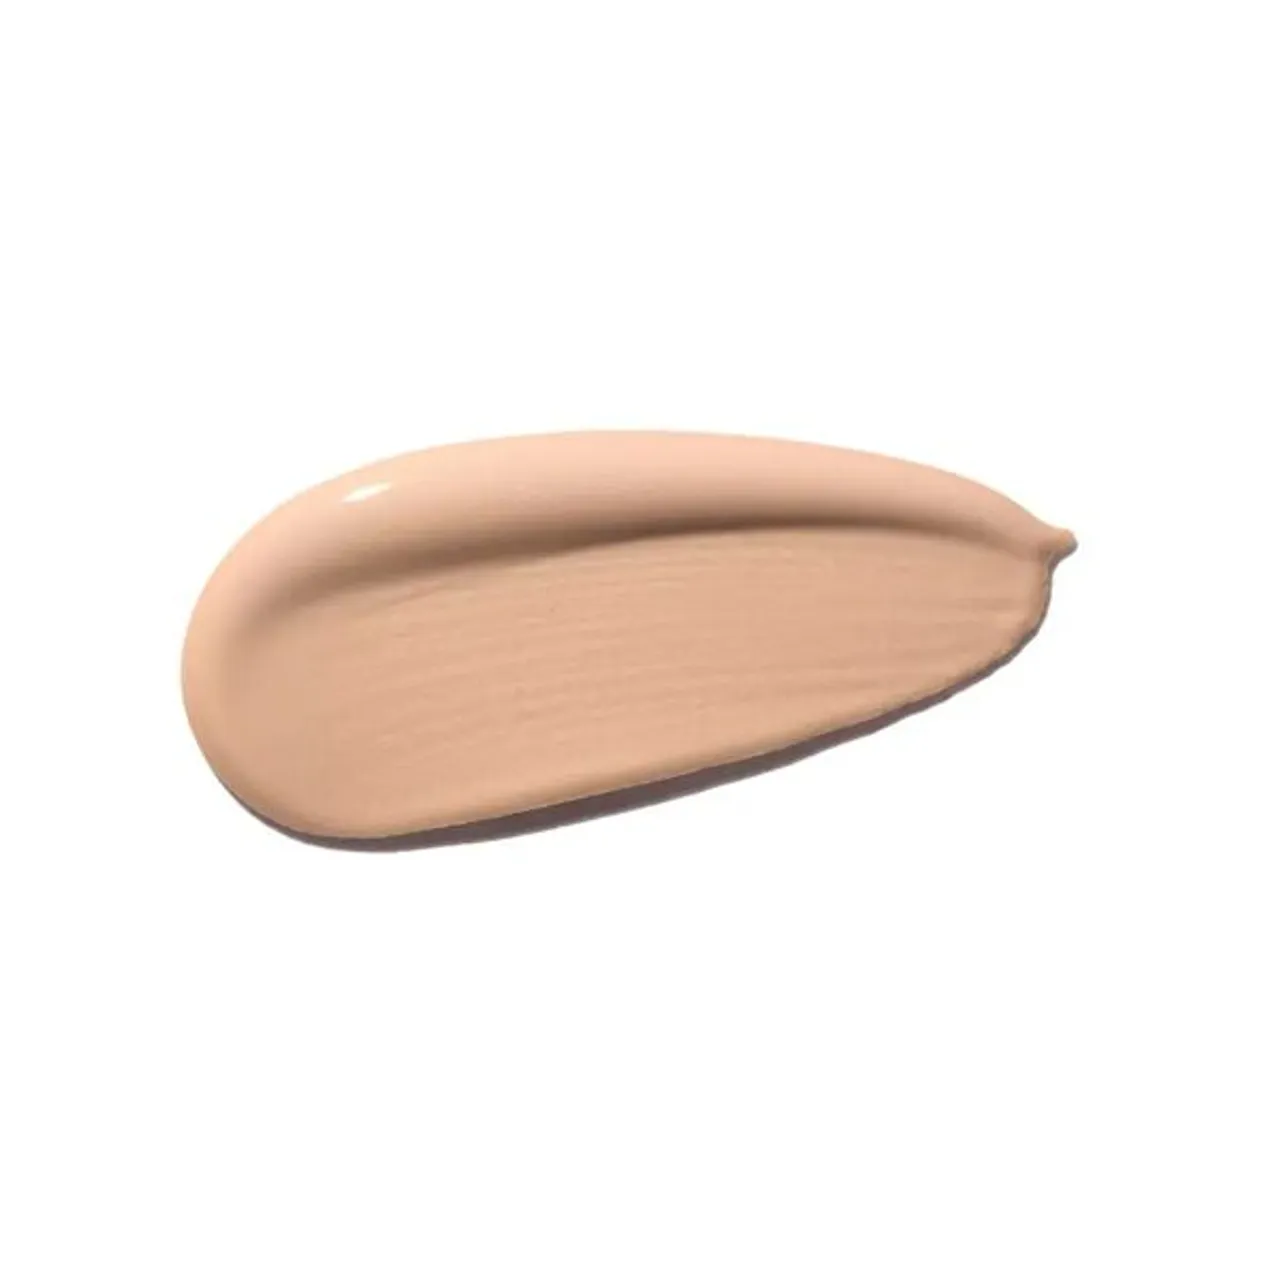 Shiseido Synchro Skin Self-Refreshing Foundation SPF 30 - 250 Sand - Unisex - Size: 30ml